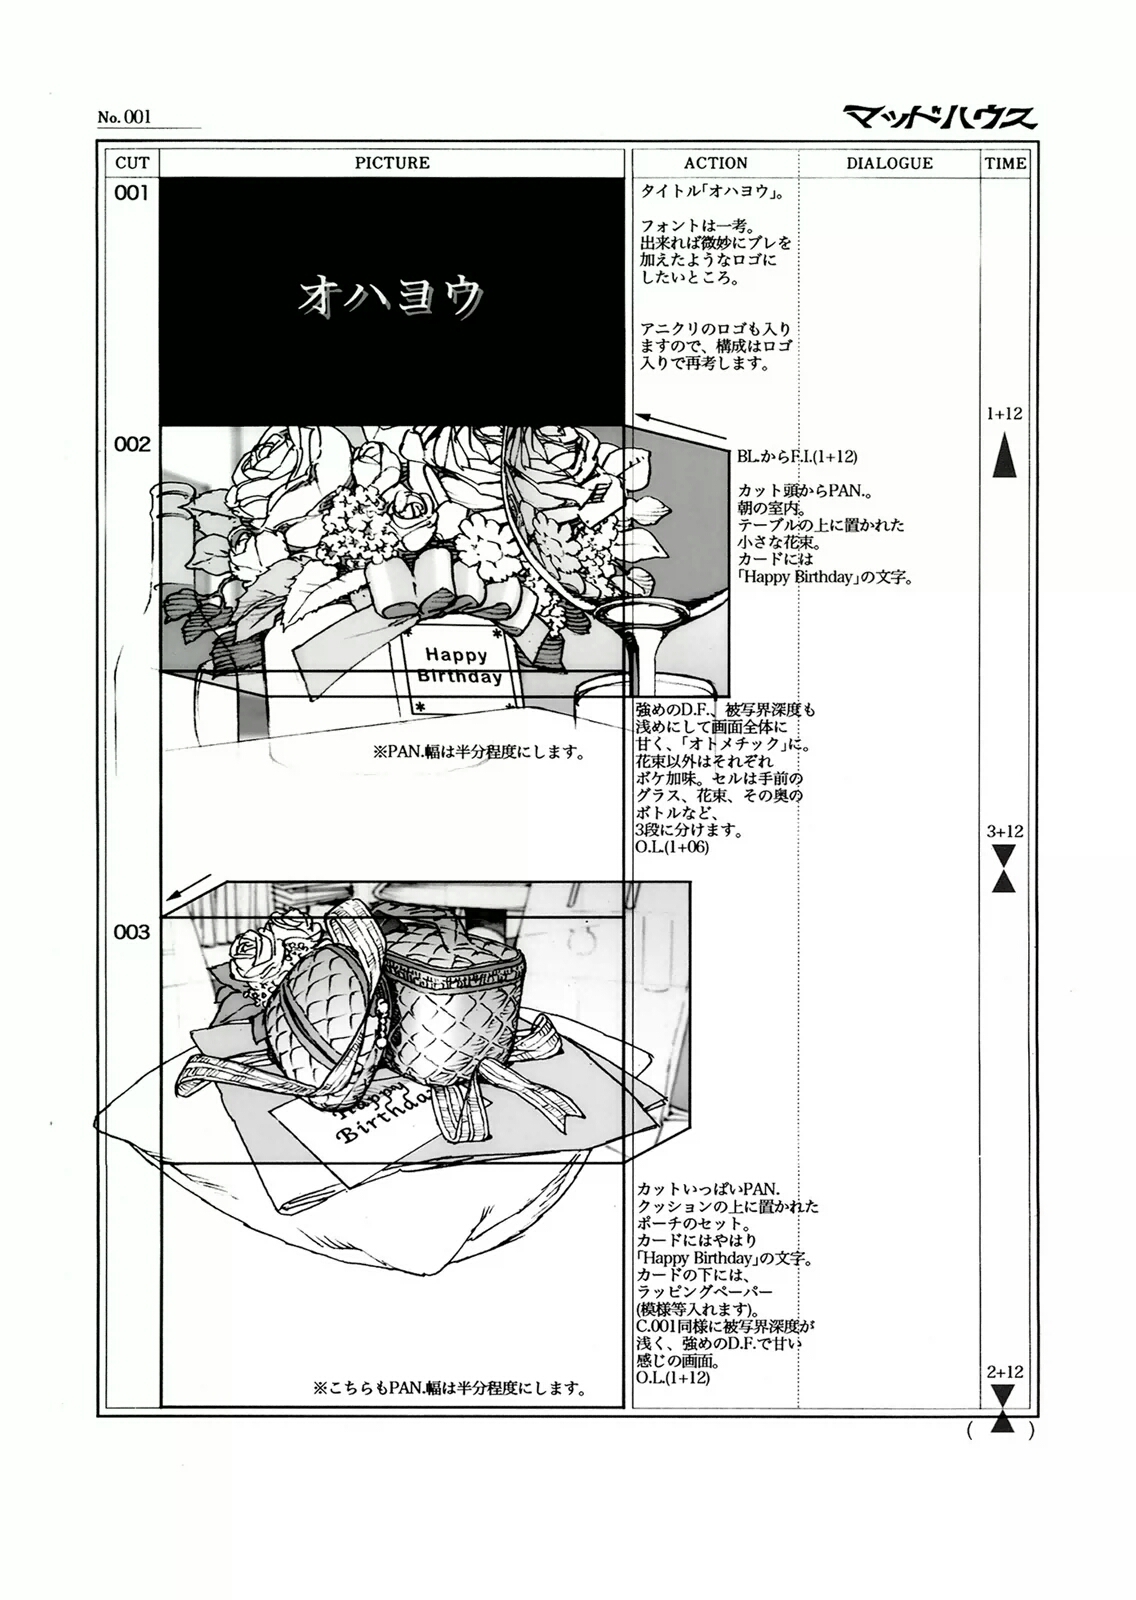 [今敏] 今敏 画集 KON'S WORKS 1982-2010 103